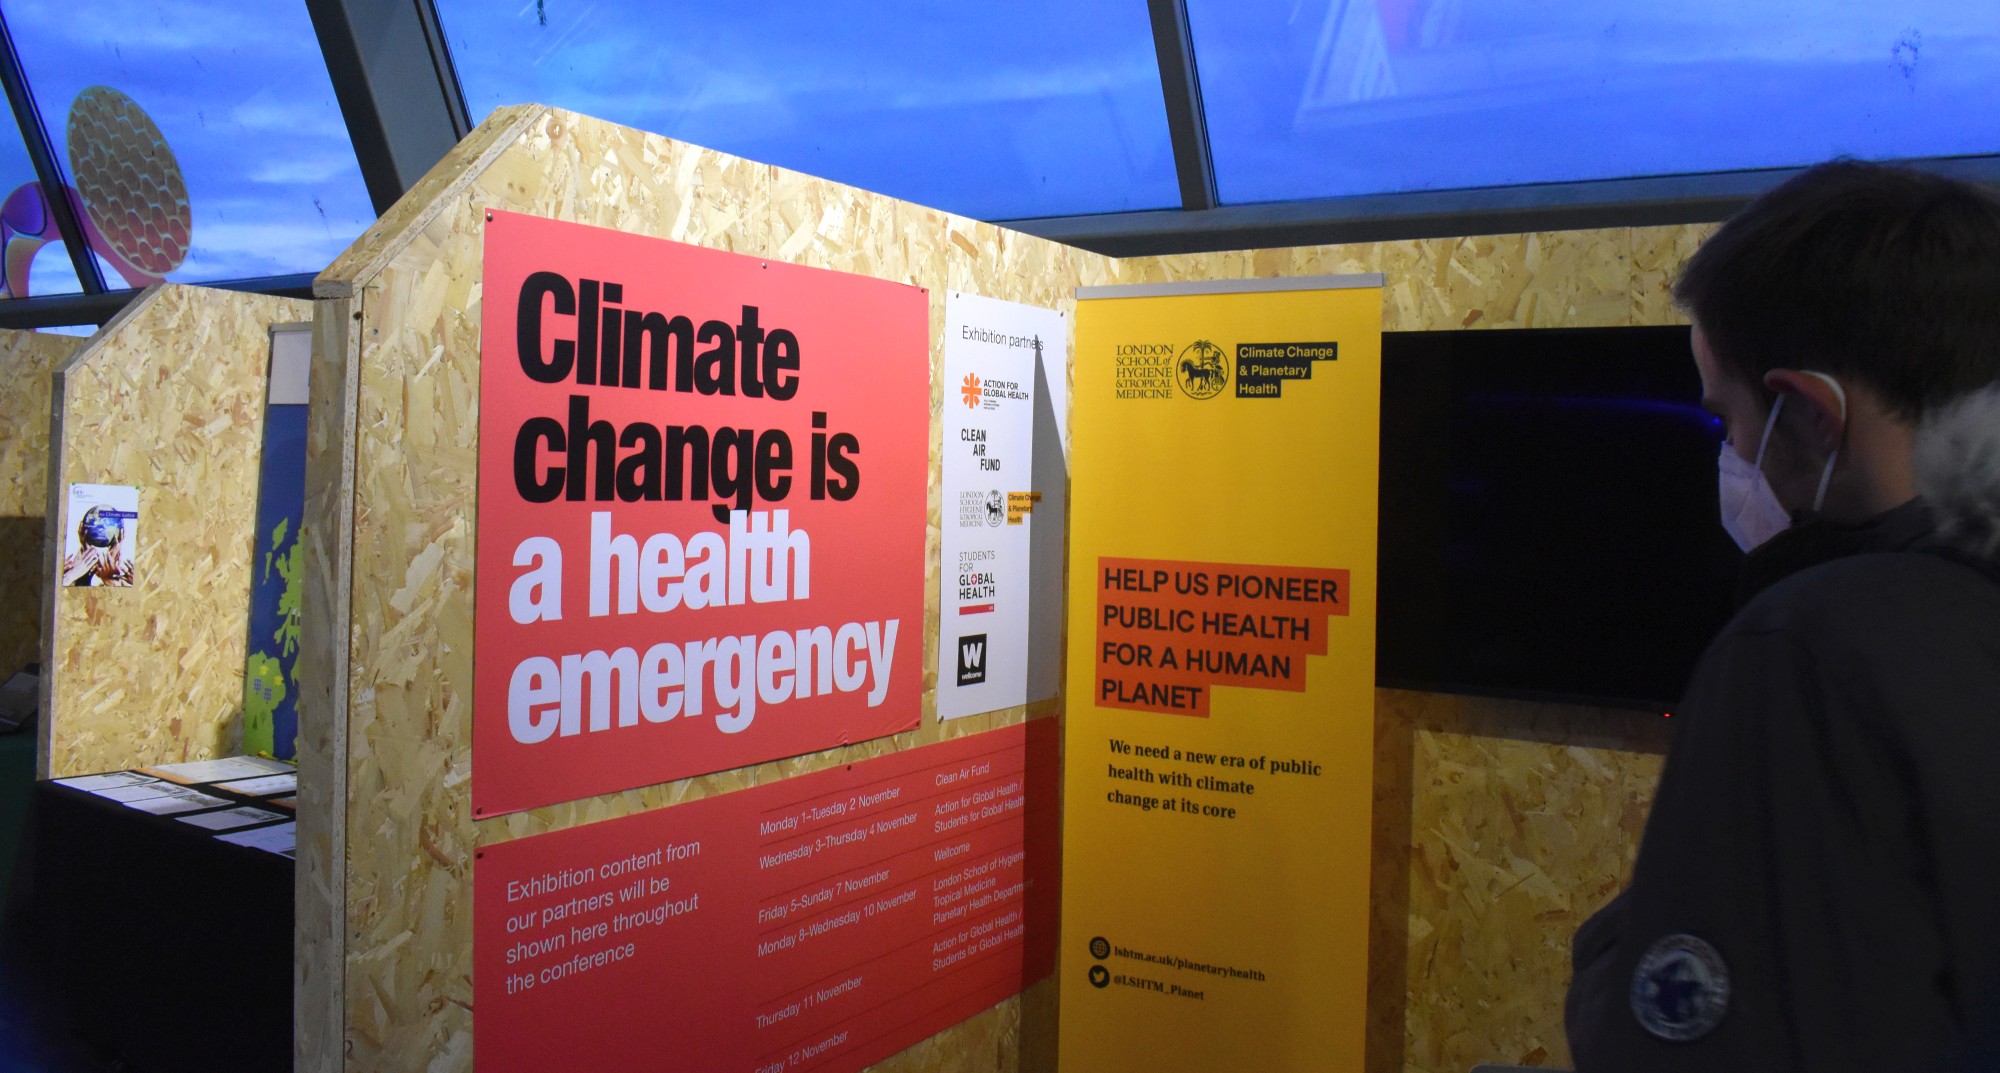 Ausstellung in der Green Zone der COP26: Climate change ist a health emergency